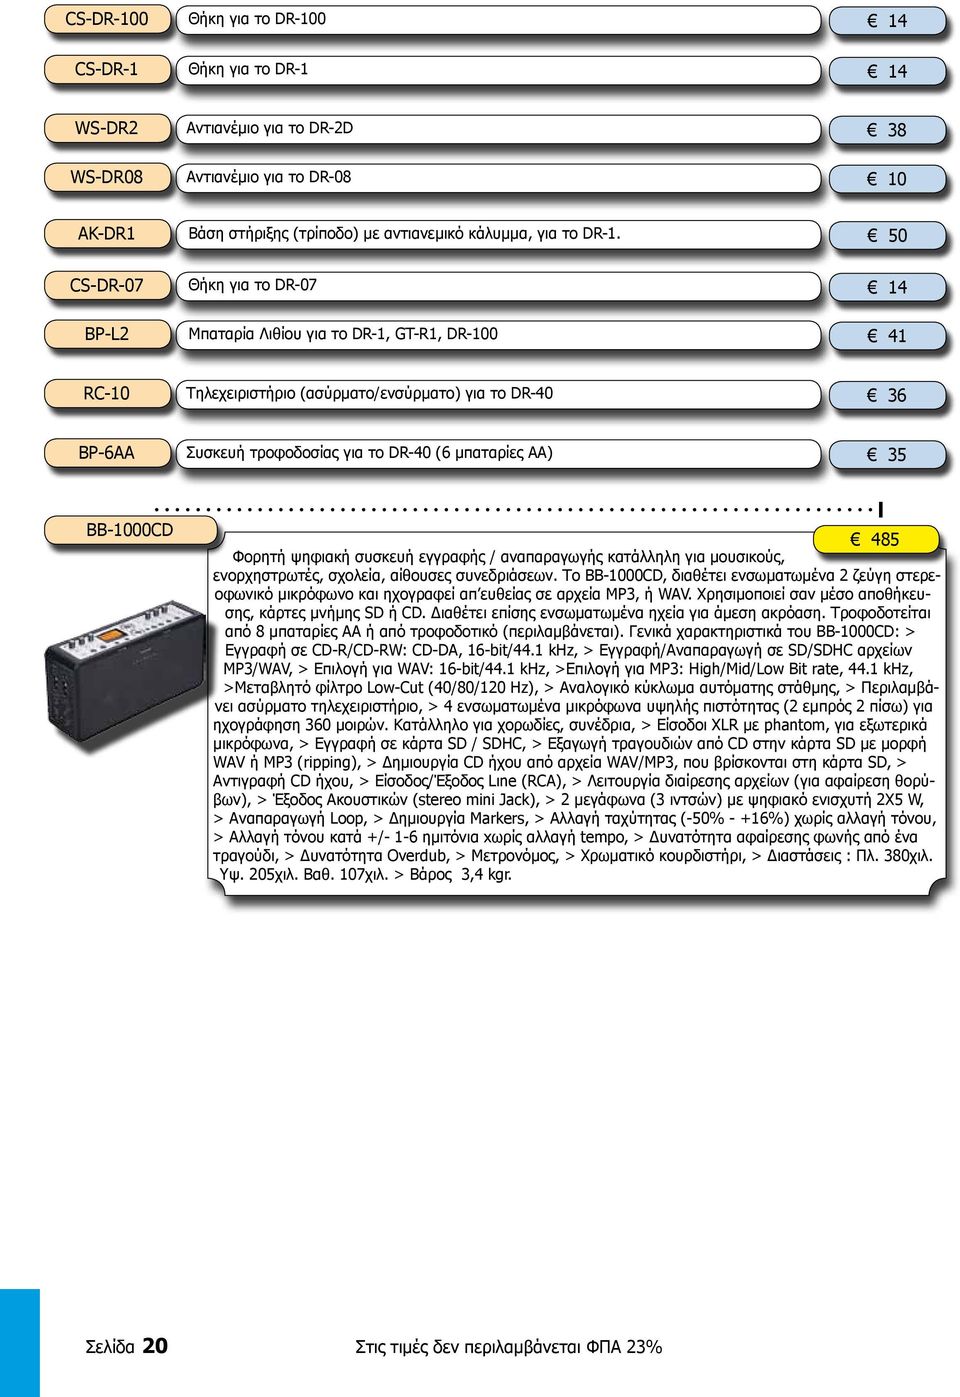 ΑΑ) 35 BB-1000CD 485 Φορητή ψηφιακή συσκευή εγγραφής / αναπαραγωγής κατάλληλη για μουσικούς, ενορχηστρωτές, σχολεία, αίθουσες συνεδριάσεων.